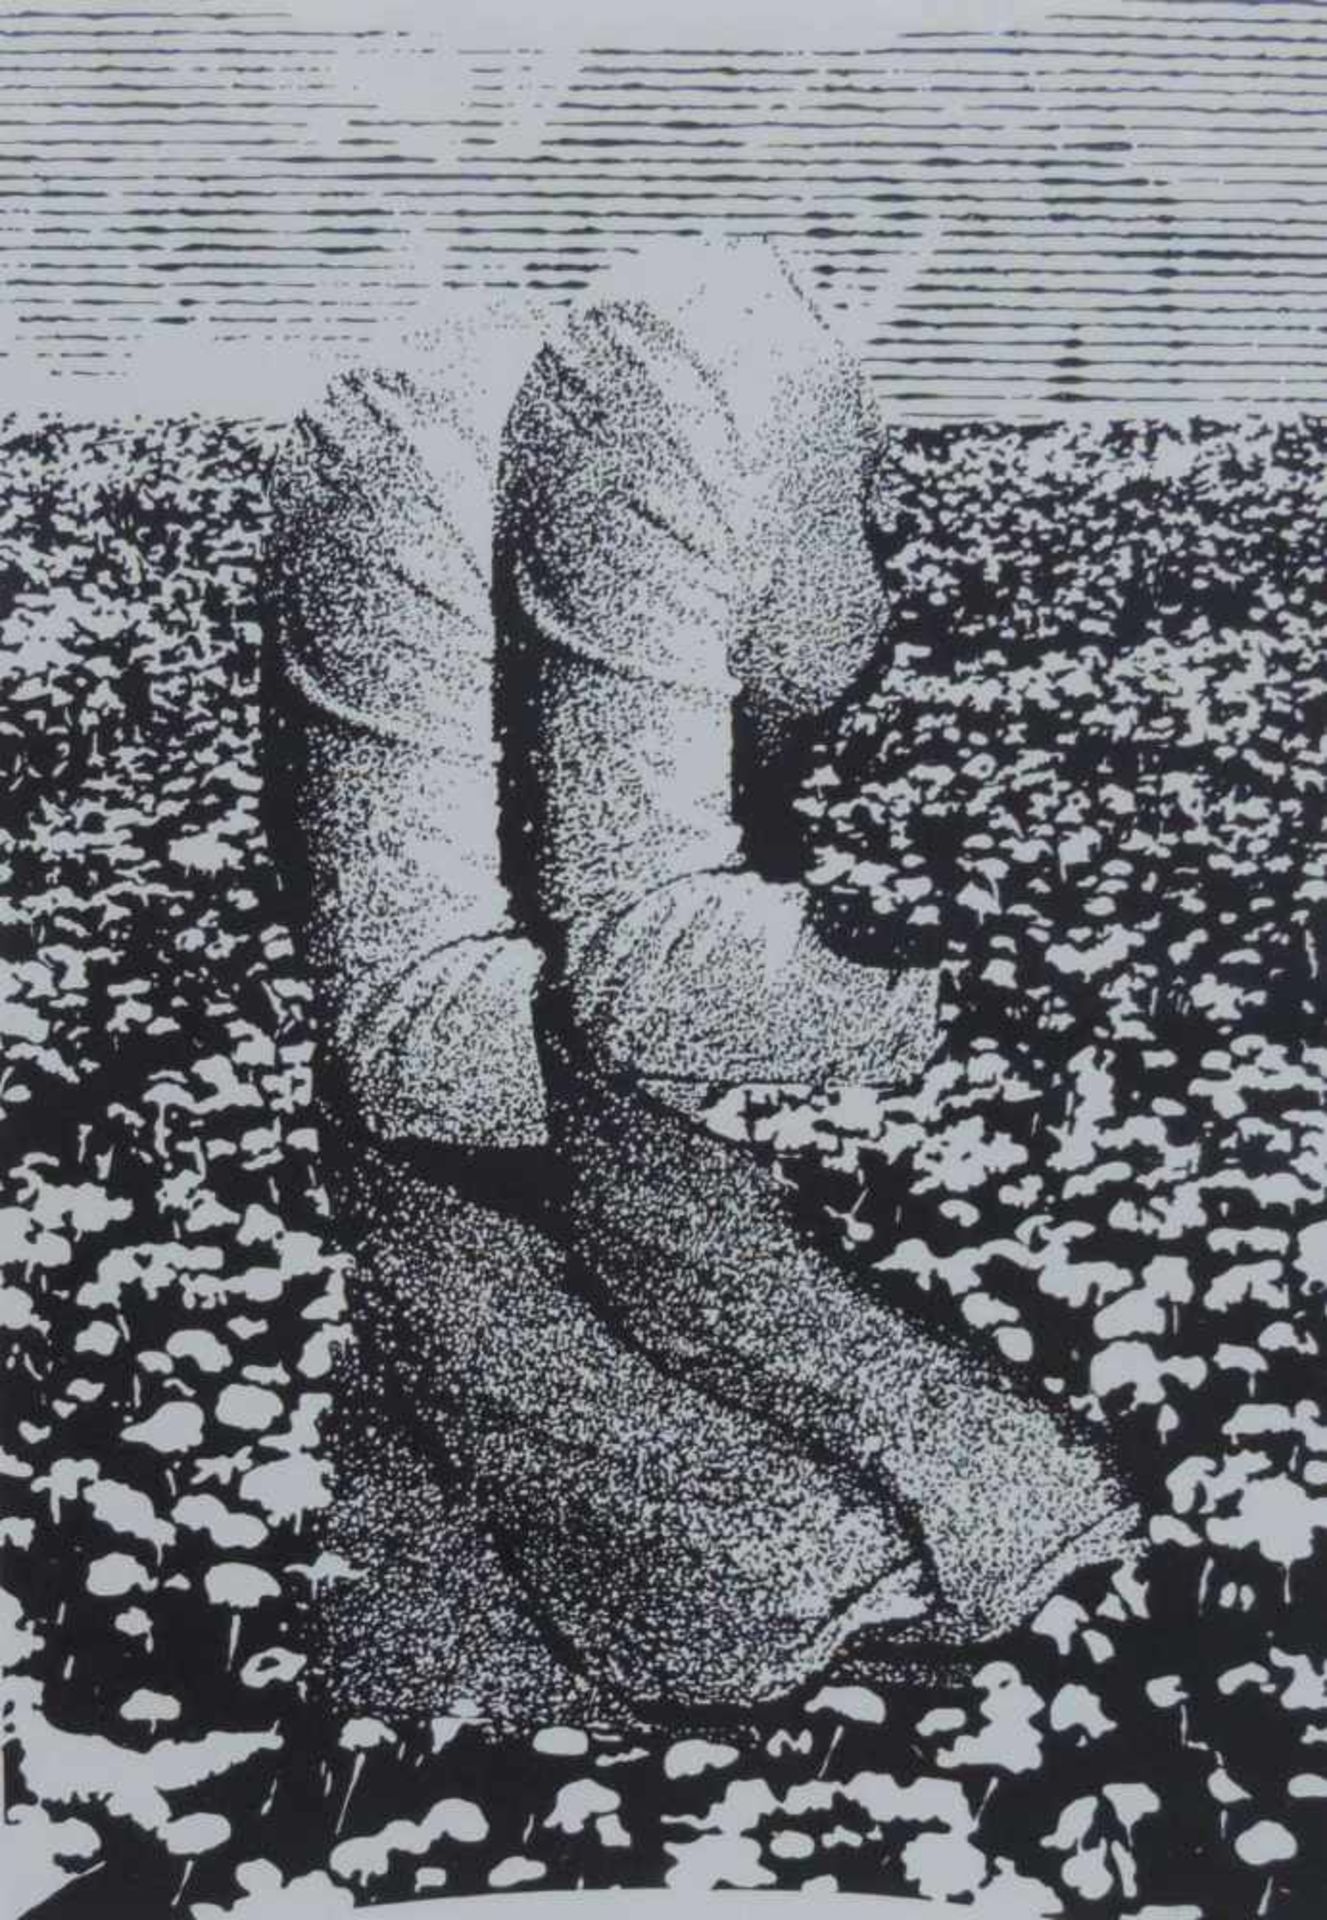 ANONYMUS/MA, Lithografie, Komposition auf Blumenwiese, im Einfall num 16/35, dat 1974, bez u